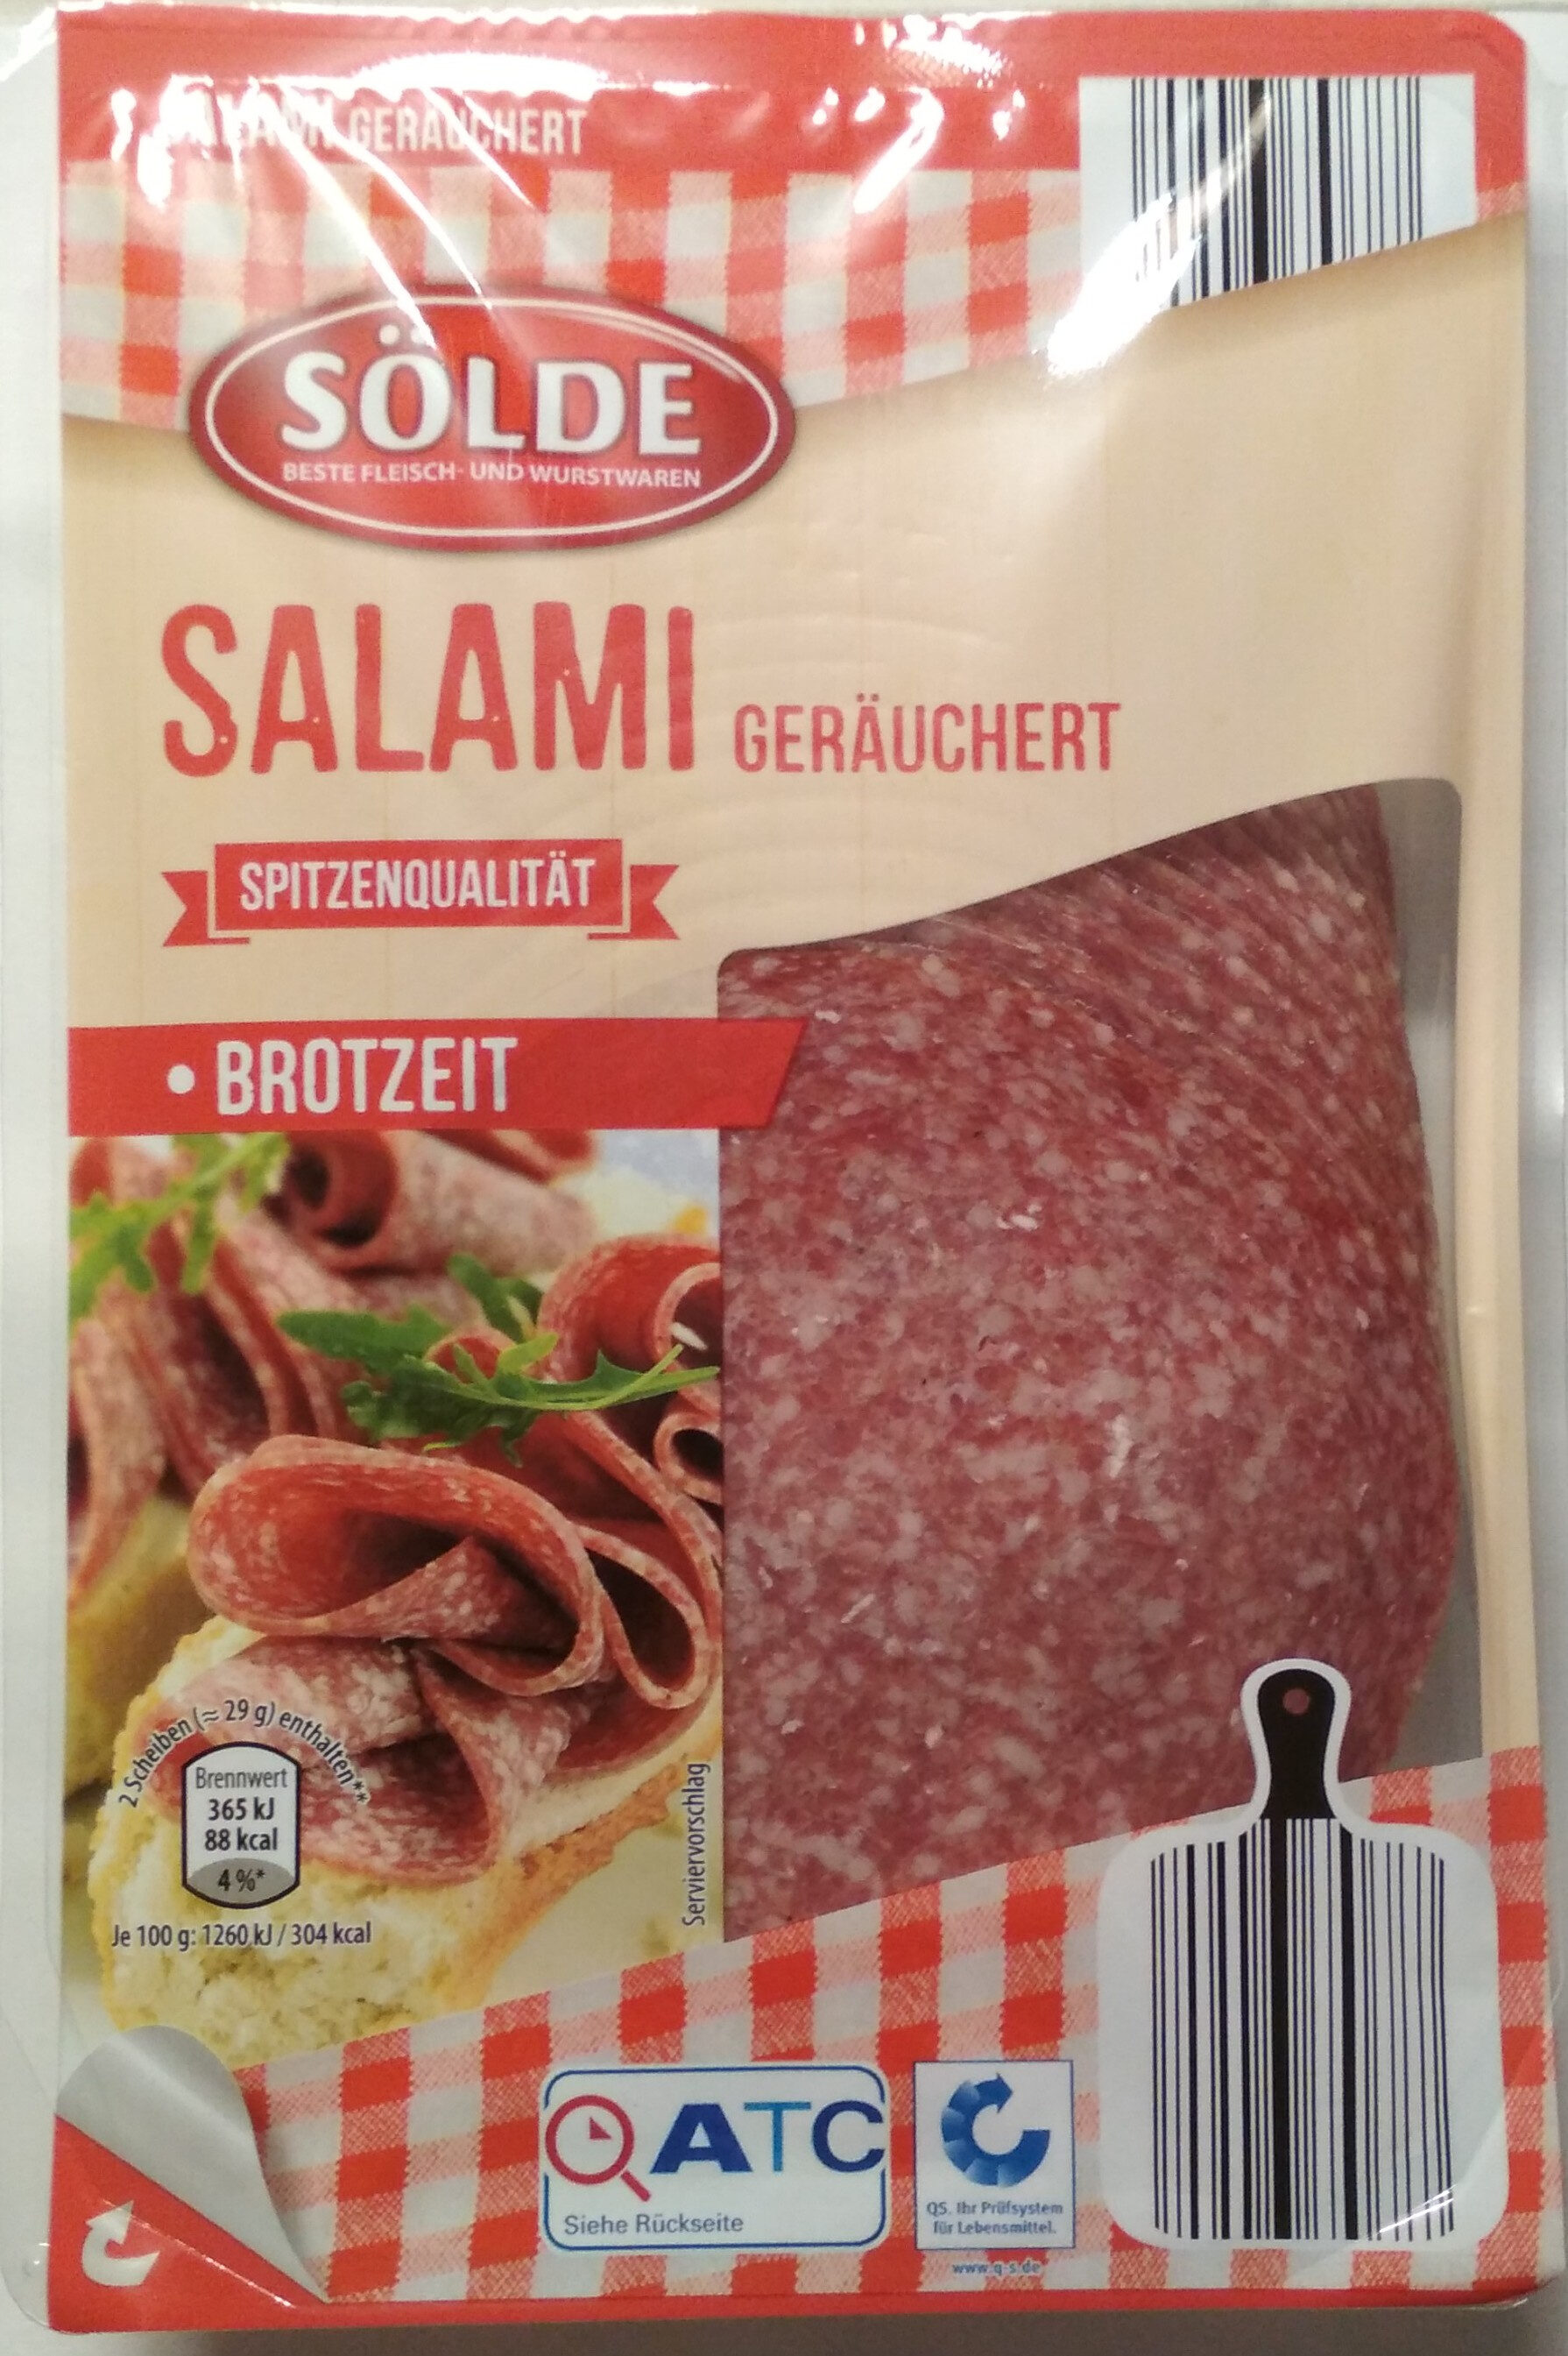 Salami Geräuchert - Product - de